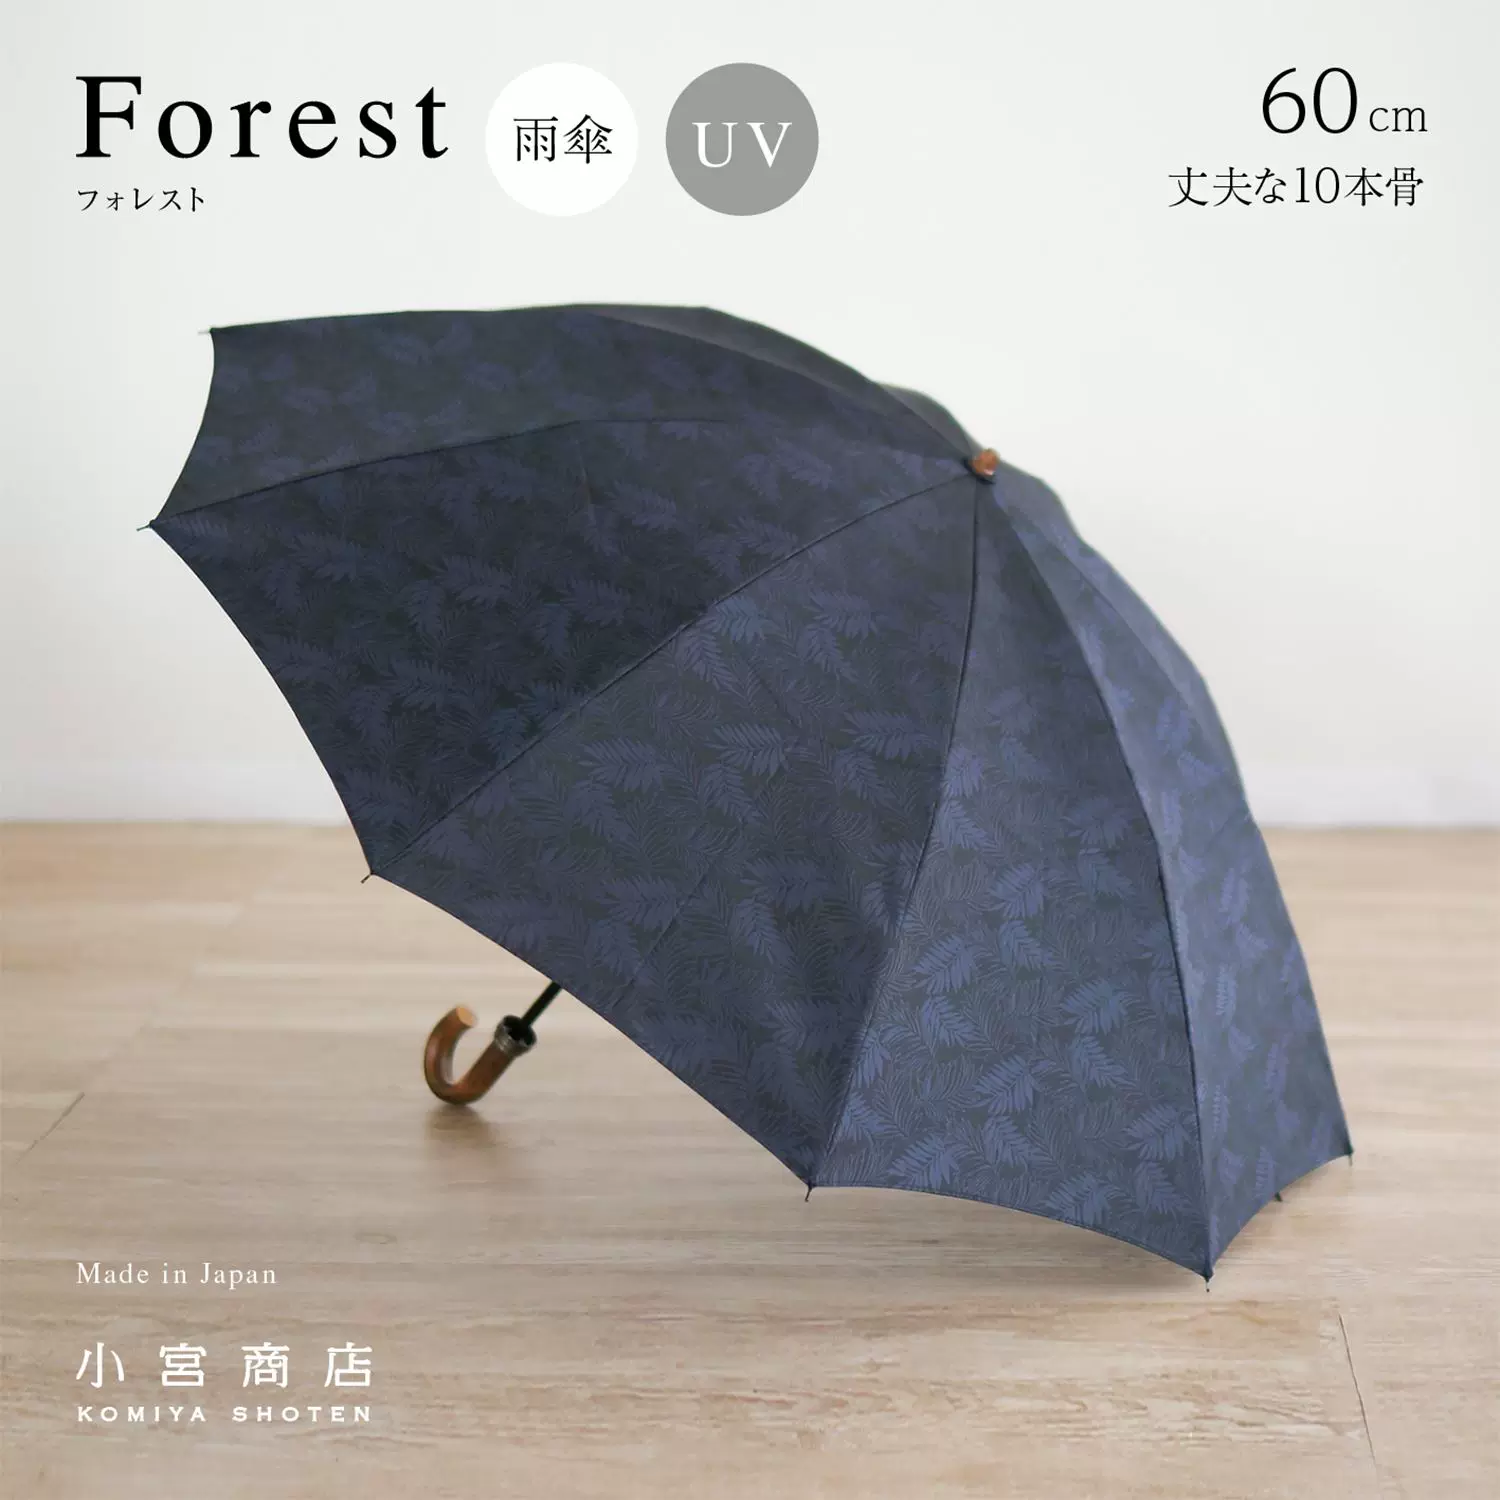 小宫商店日本手作高级日式男用折叠雨伞高级织物藤条手柄-Taobao Vietnam